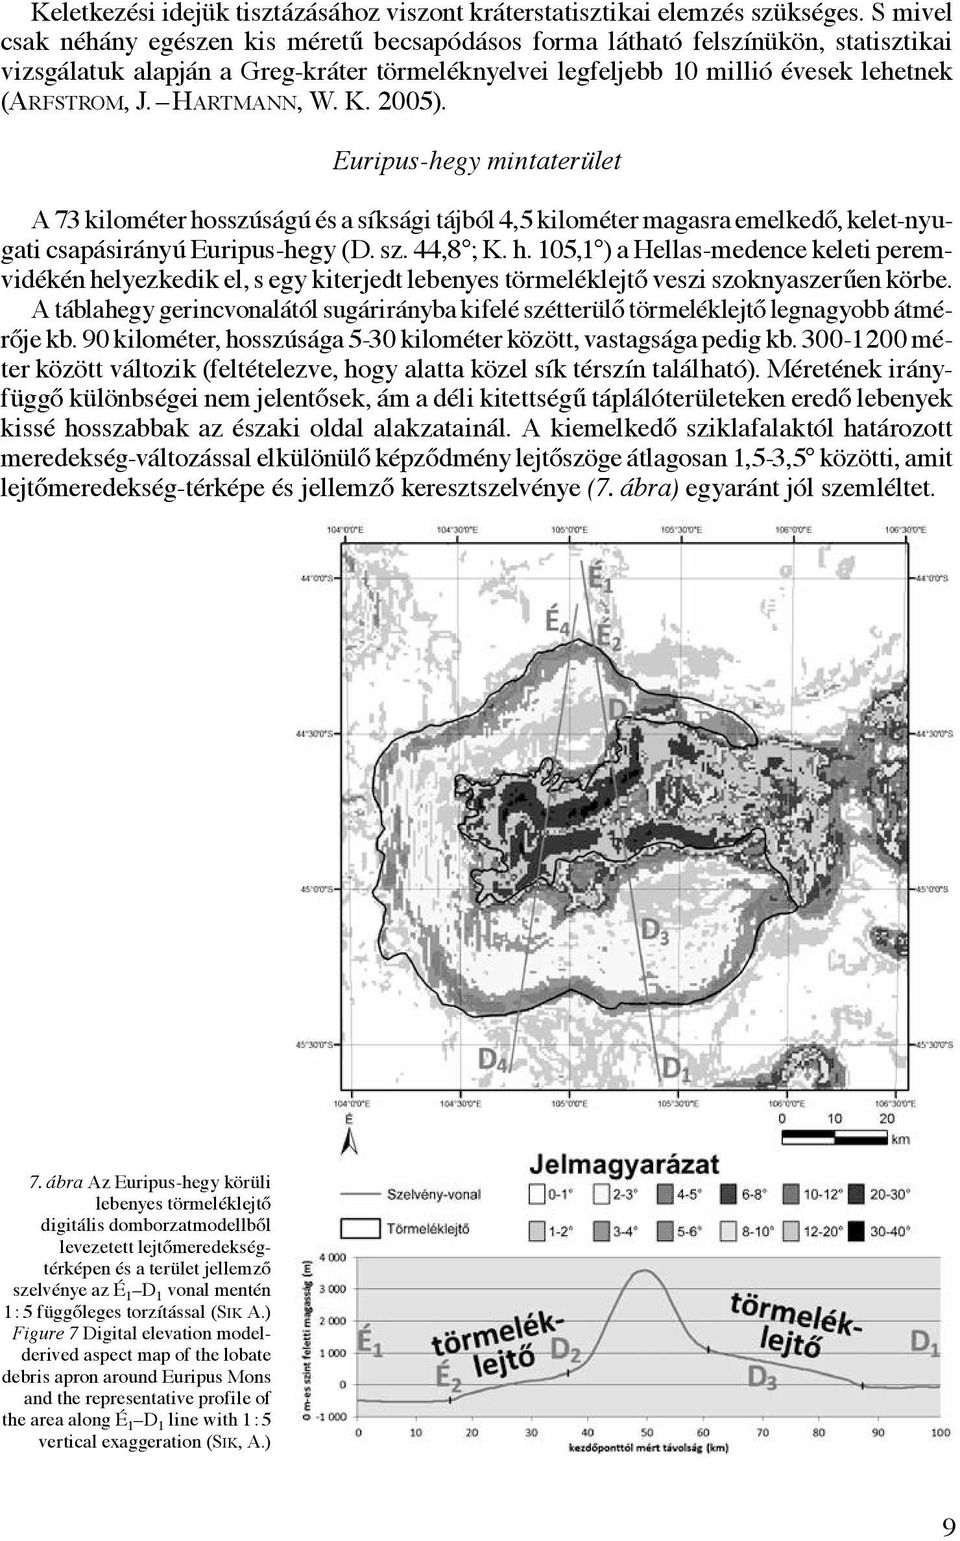 Hartmann, W. K. 2005). Euripus-hegy mintaterület A 73 kilométer hosszúságú és a síksági tájból 4,5 kilométer magasra emelkedő, kelet-nyugati csapásirányú Euripus-hegy (D. sz. 44,8 ; K. h. 105,1 ) a Hellas-medence keleti peremvidékén helyezkedik el, s egy kiterjedt lebenyes törmeléklejtő veszi szoknyaszerűen körbe.